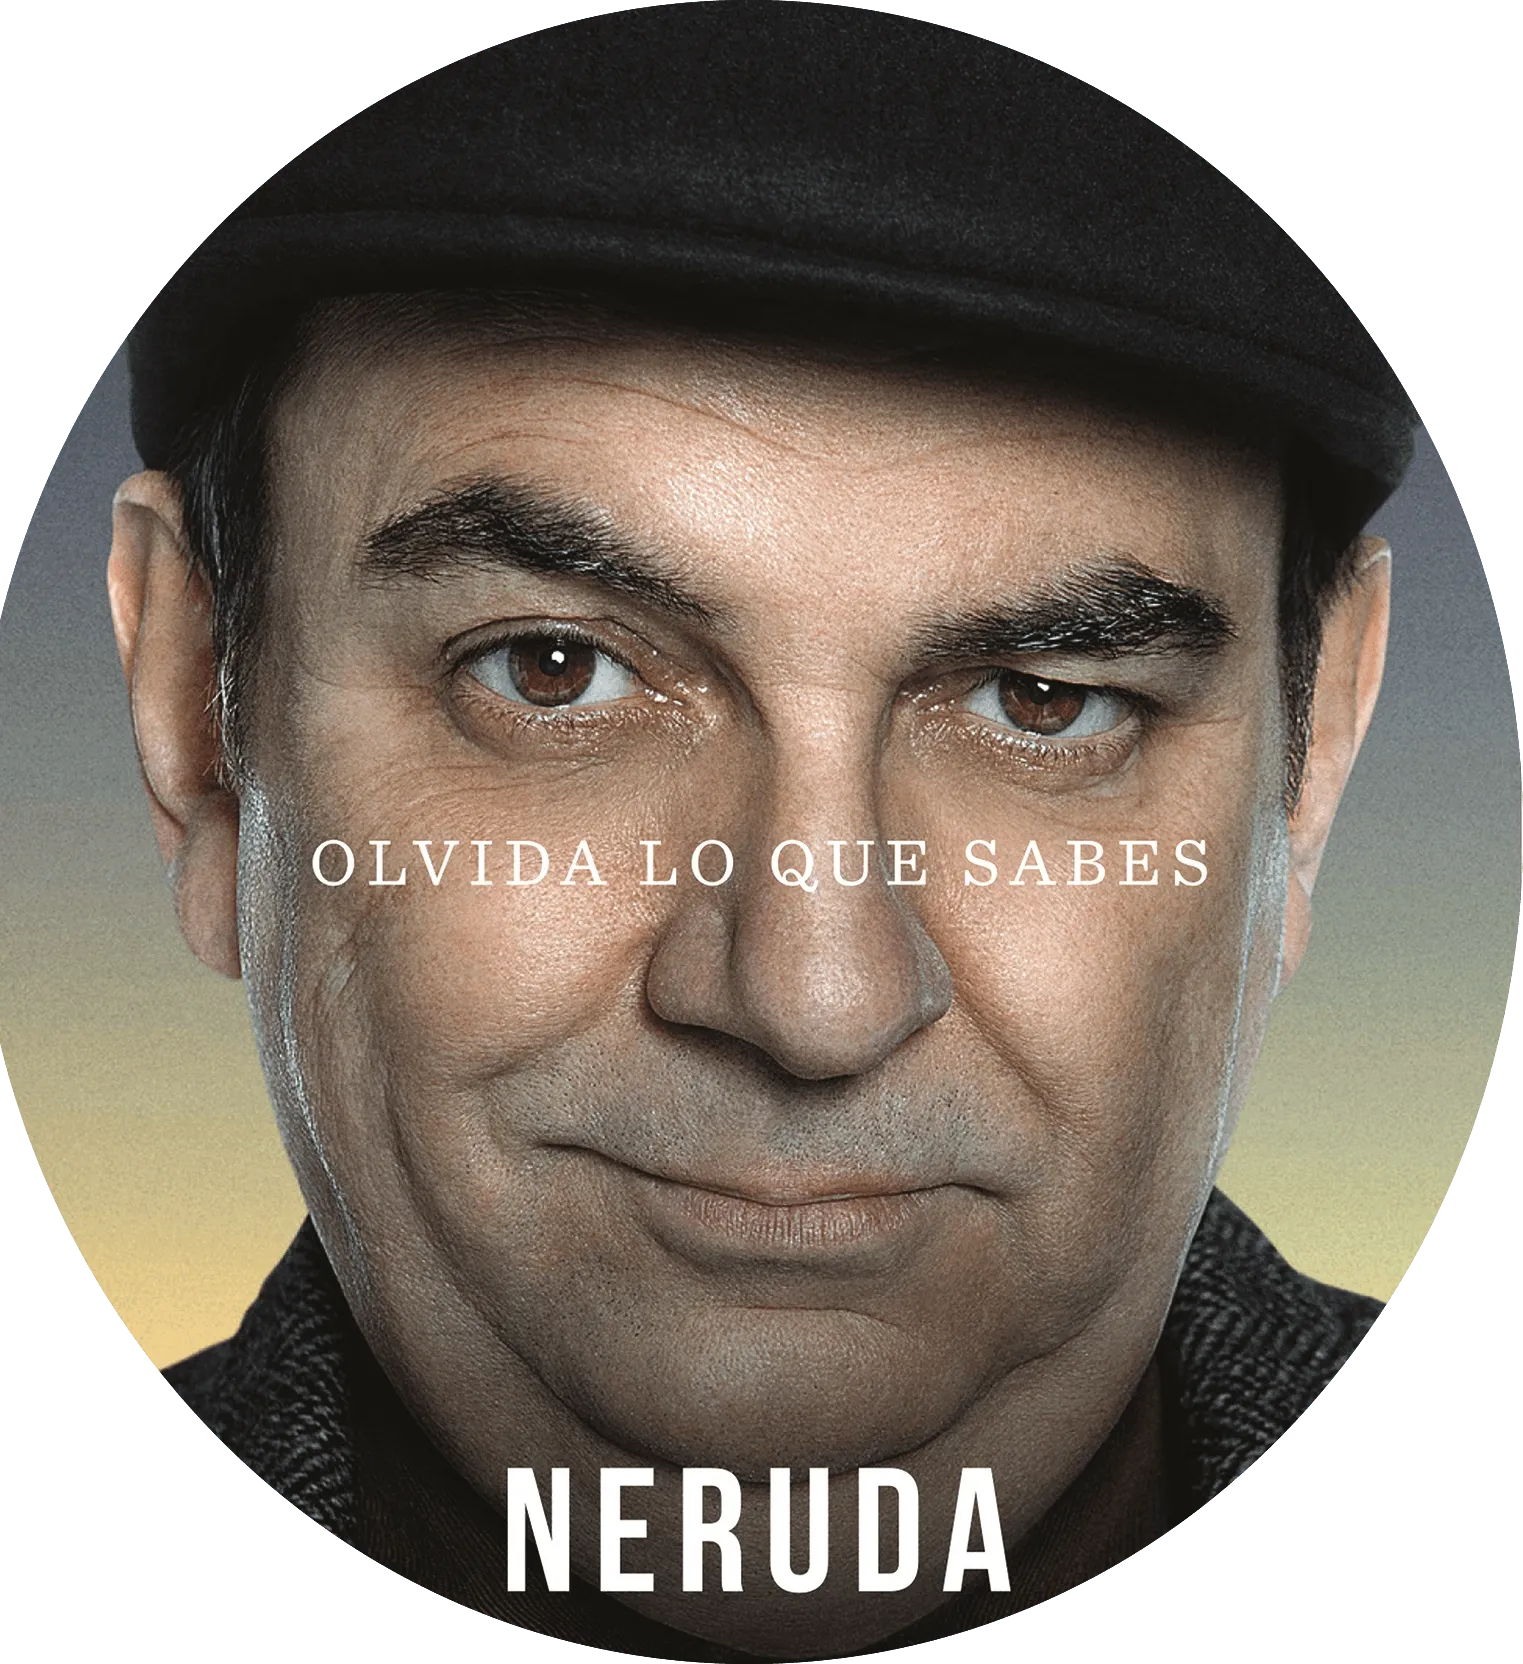 Neruda portrait